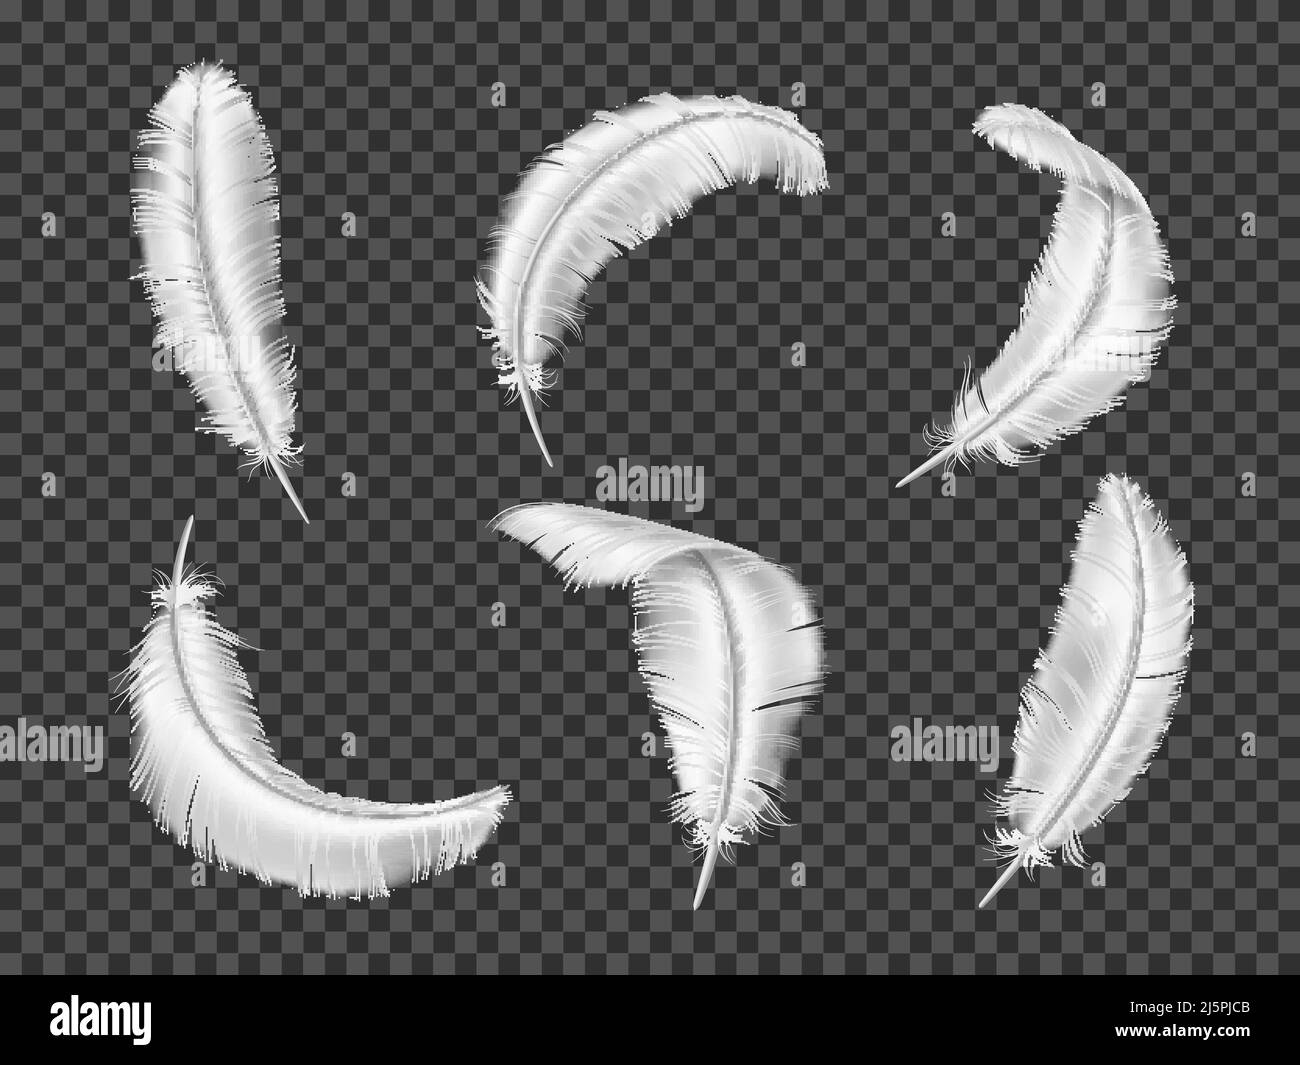 Piume bianche realistiche. 3D elementi di piombatura di uccelli. Oggetti morbidi e lisci isolati. Ali d'angelo. In modo diverso oca o cigno curvato quills. Volare Illustrazione Vettoriale